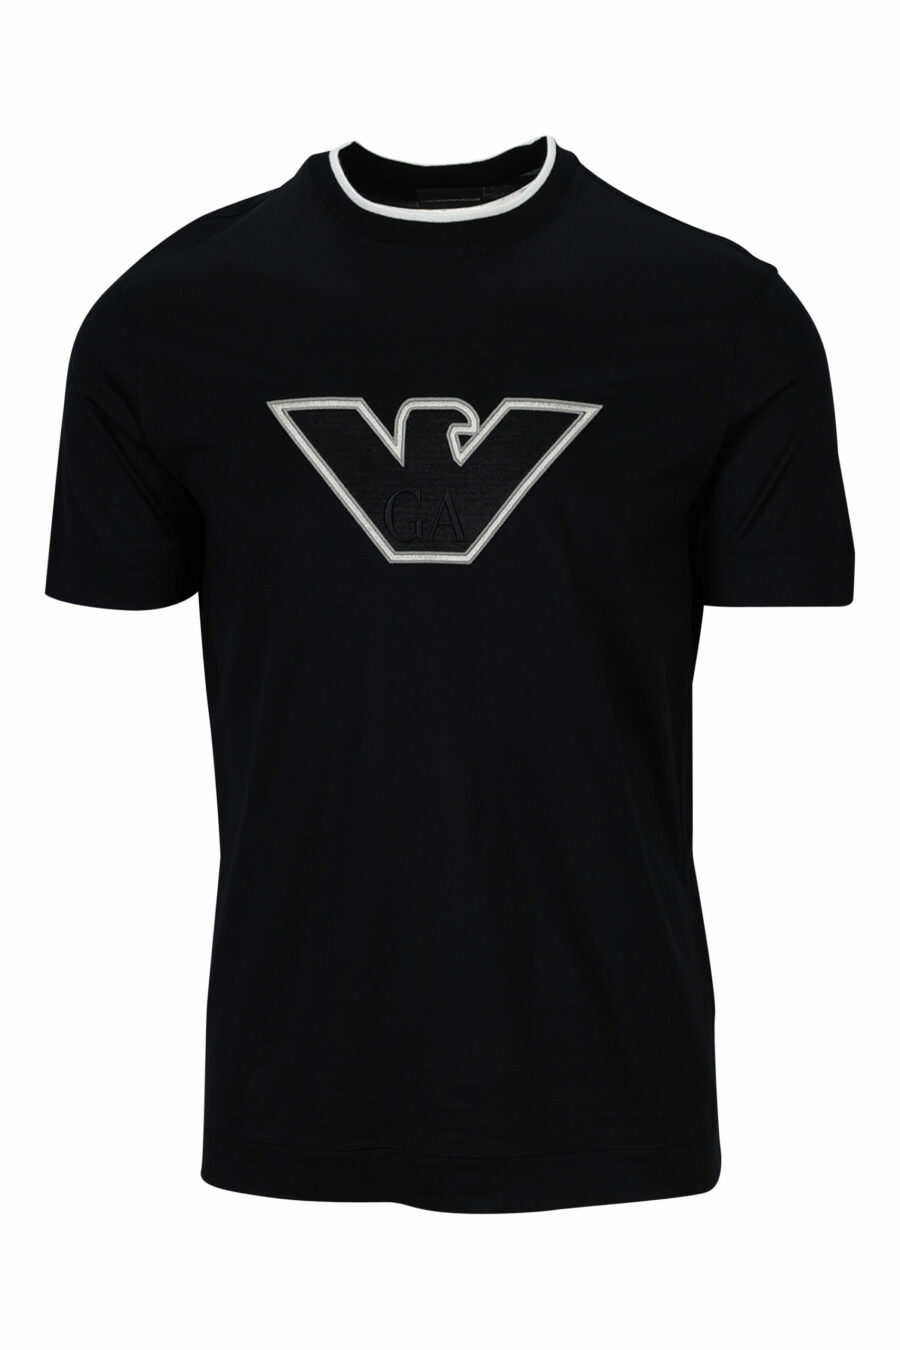 Camiseta negra con maxilogo águila blanca delineada - 8057767554040 scaled